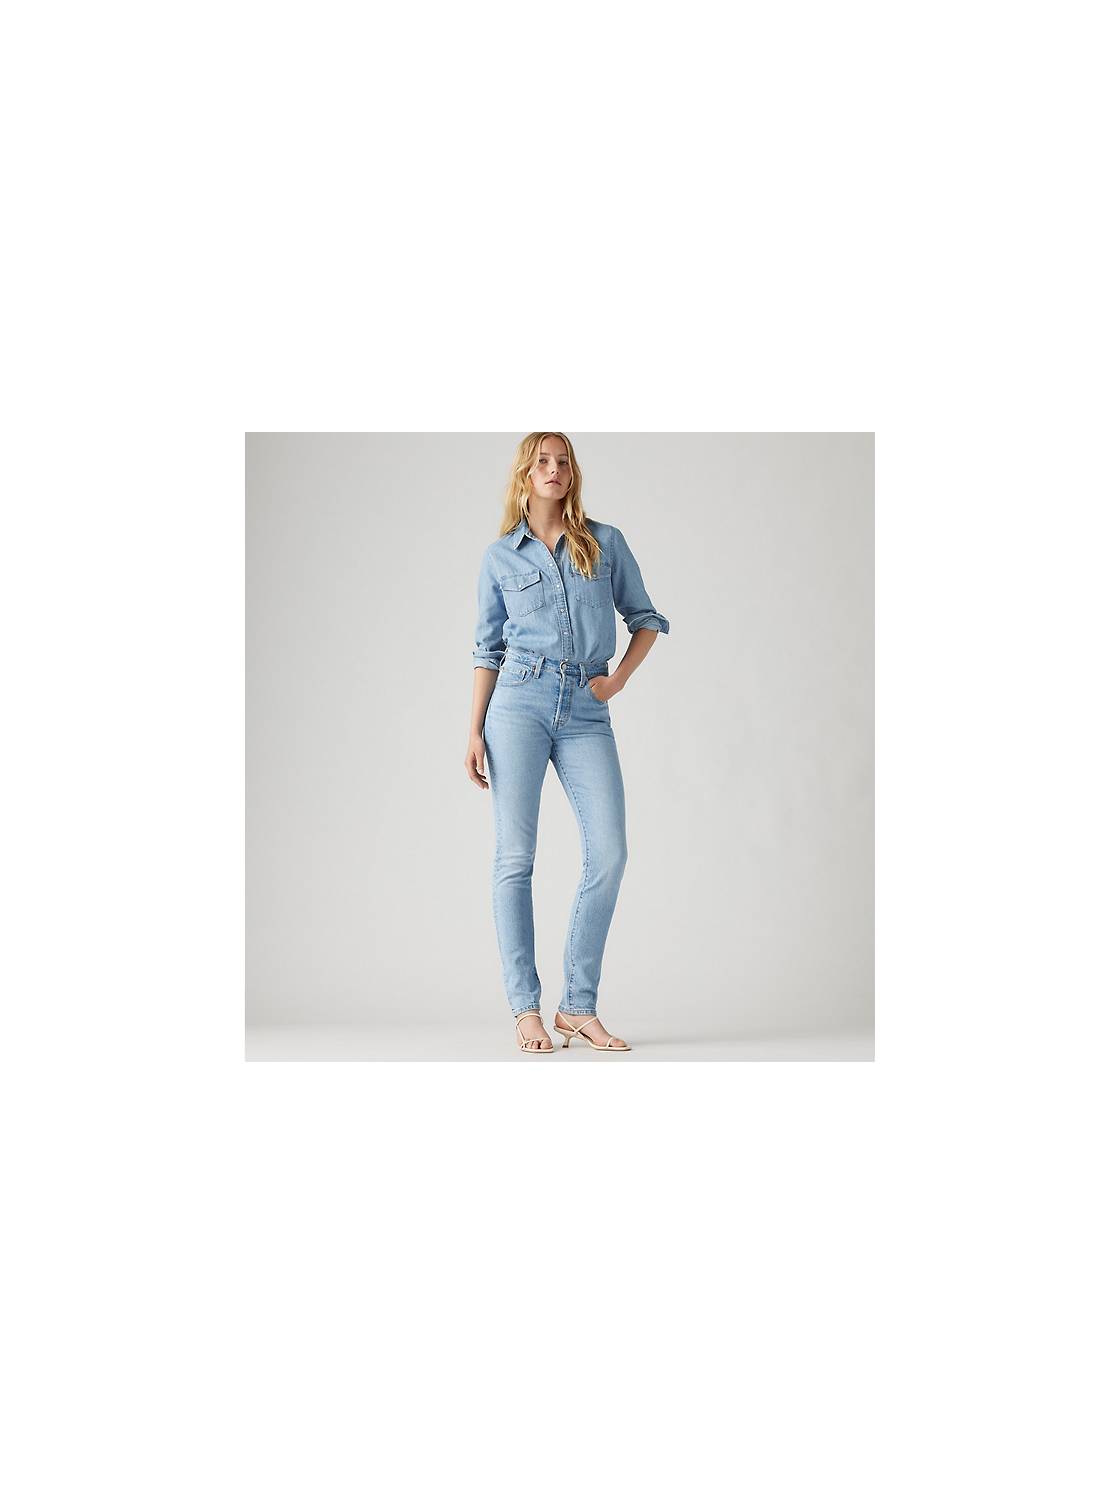 Women's Skinny Jeans: Shop Skinny Jeans for Women